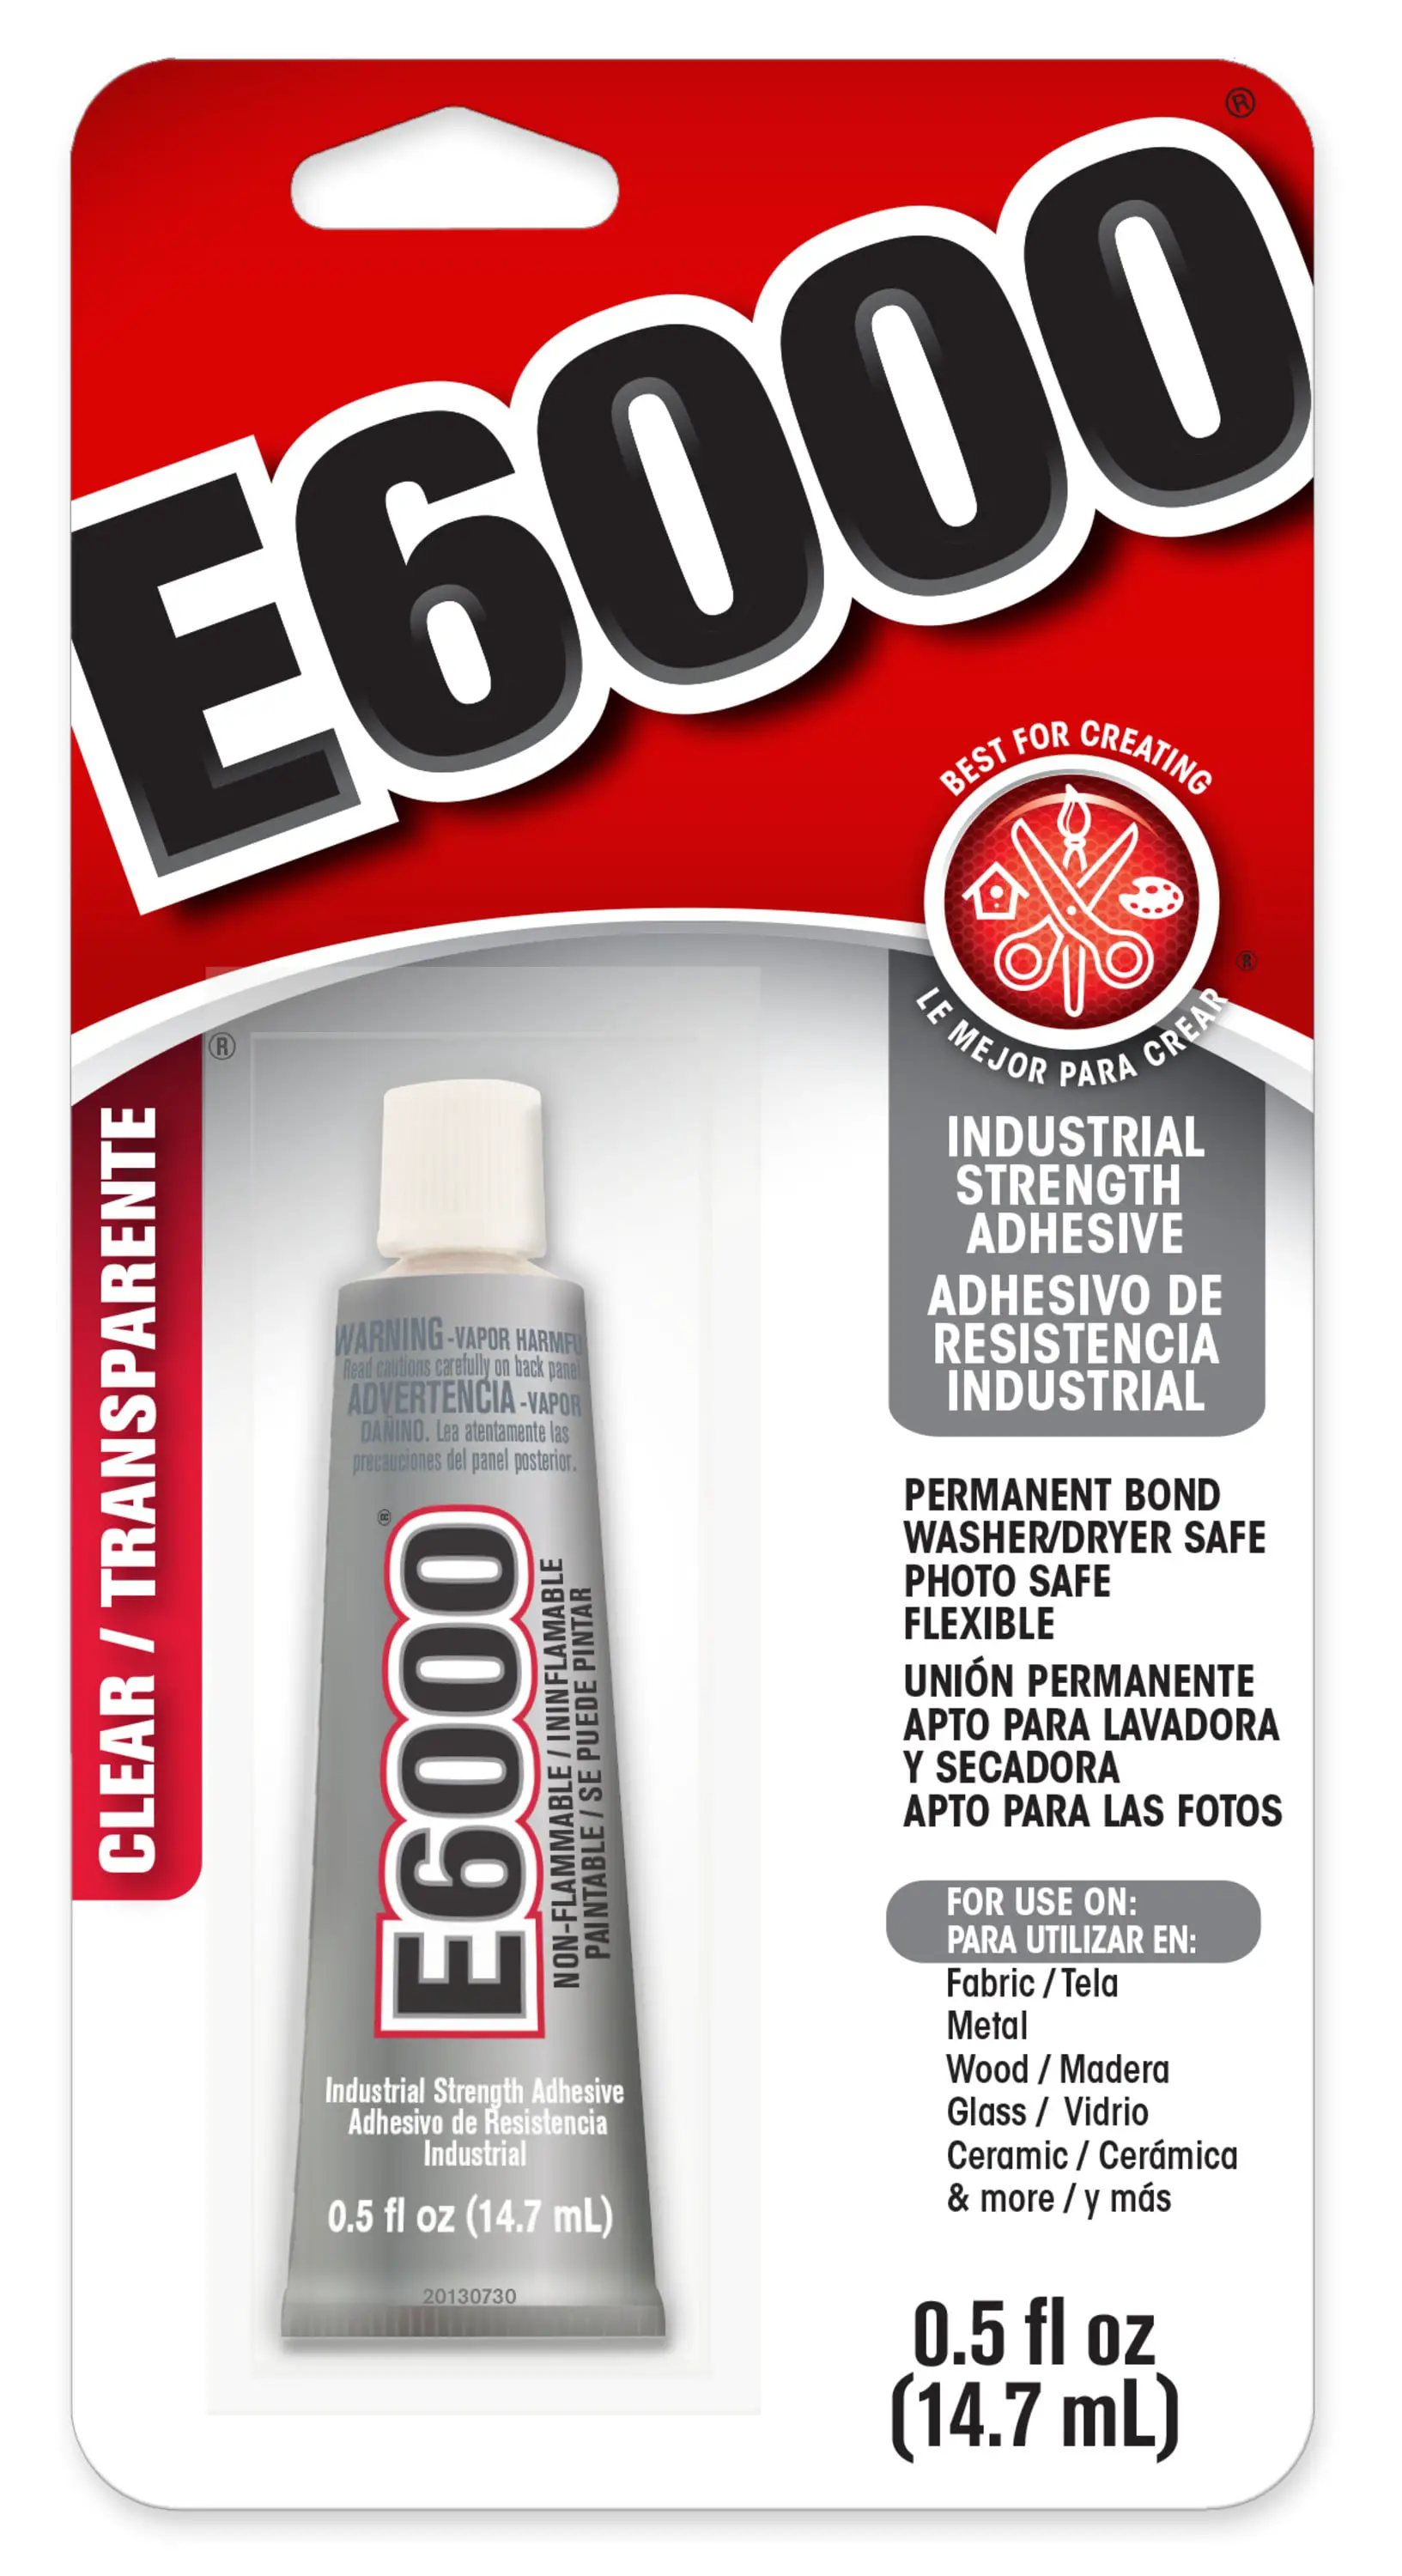 What Is E 6000 Glue